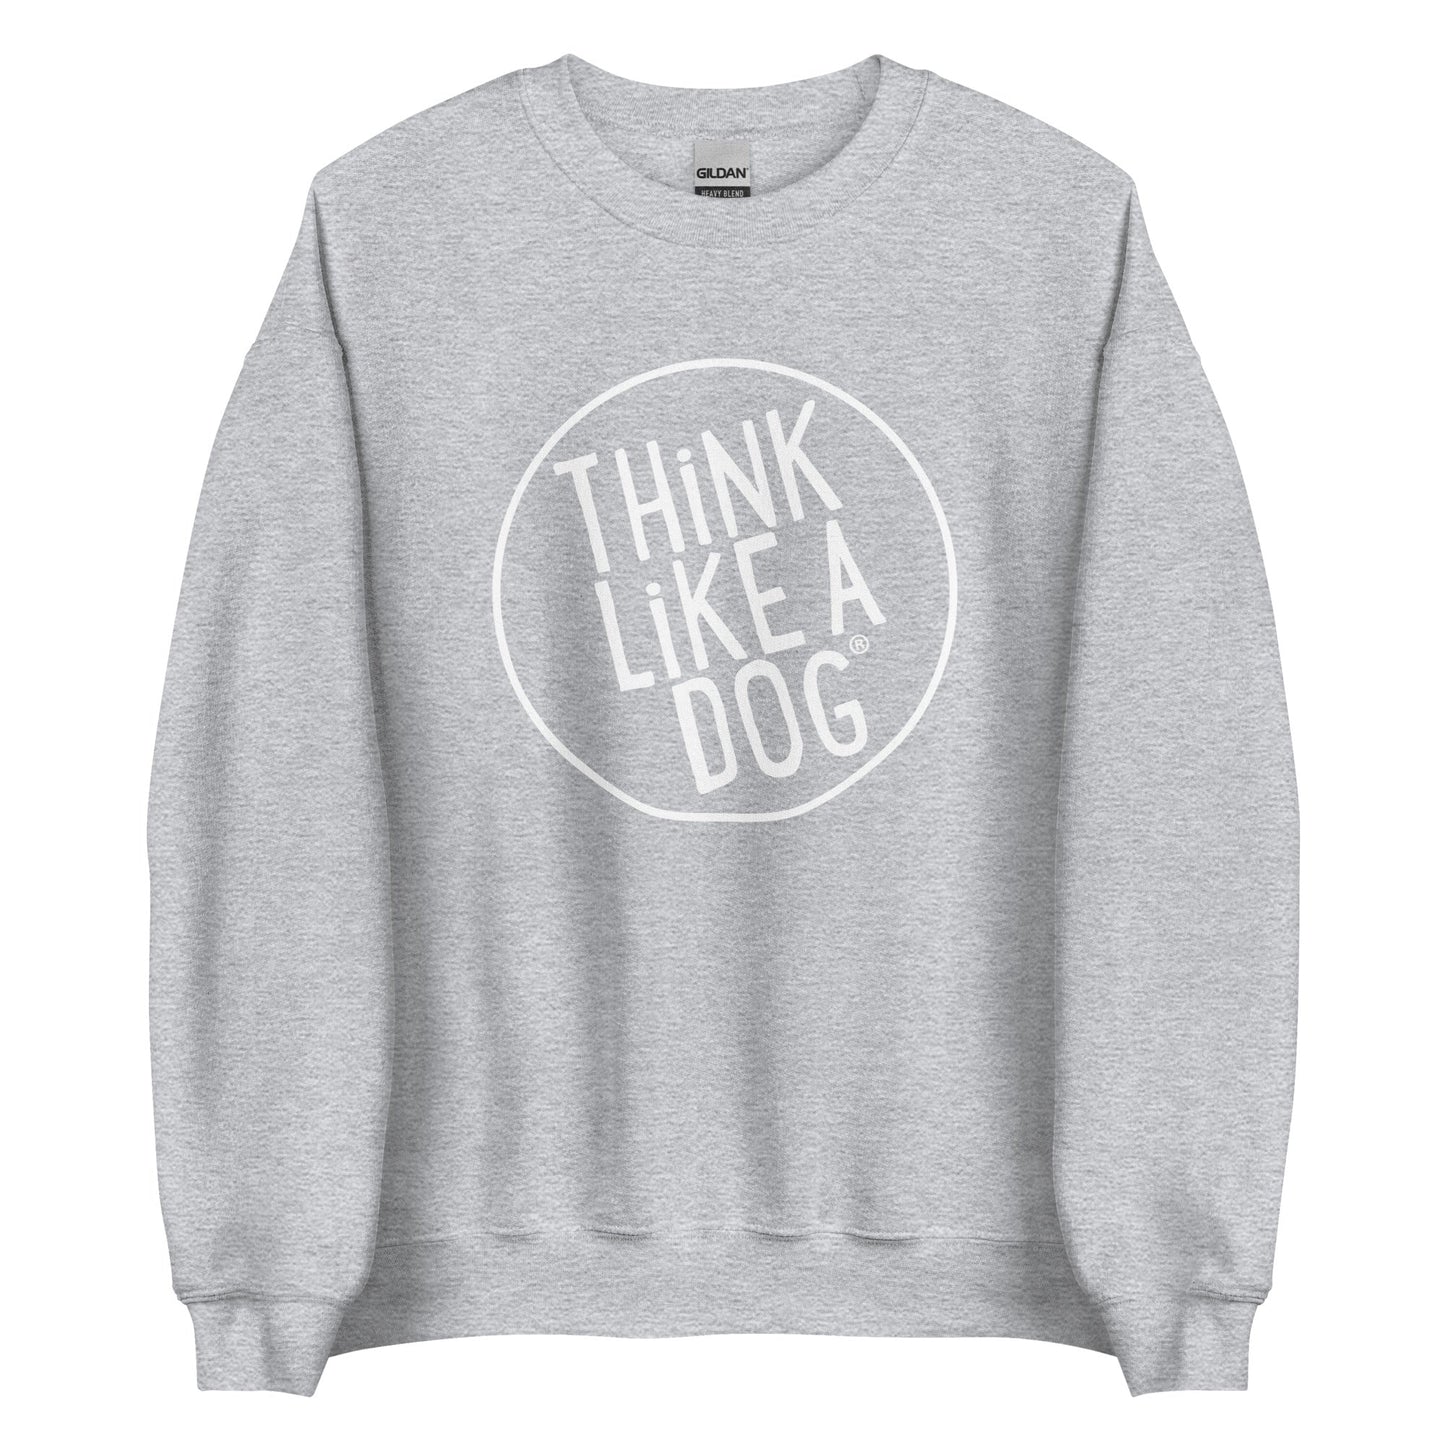 THiNK LiKE A DOG® Large White Logo Unisex Sweatshirt - THiNK LiKE A DOG®